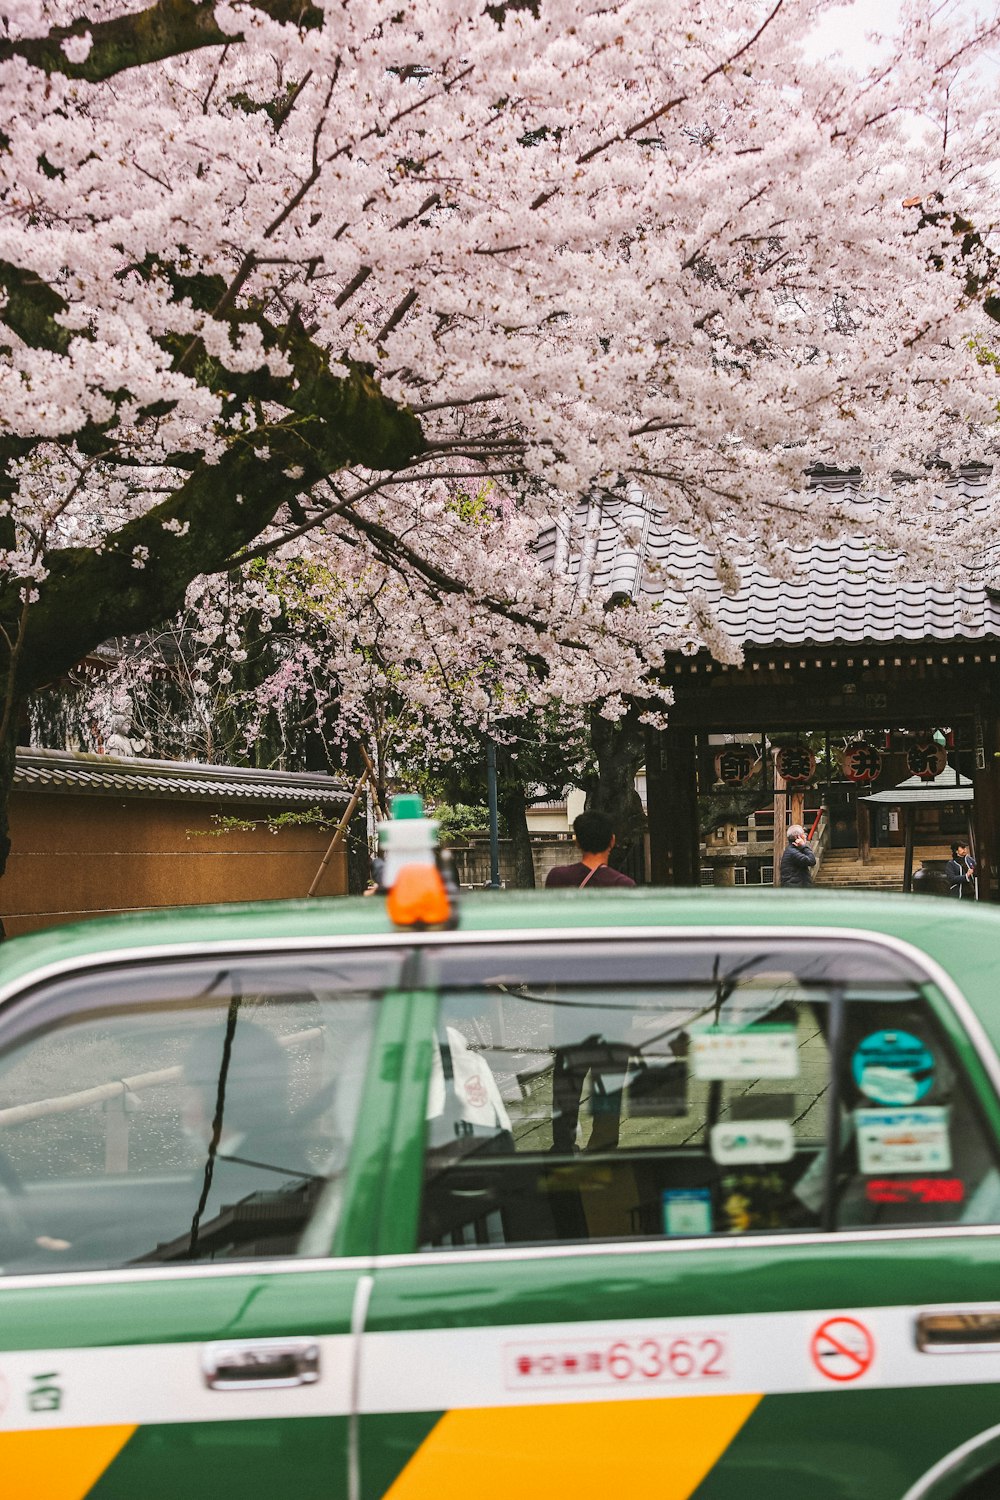 Un taxi vert passe devant un cerisier en fleurs